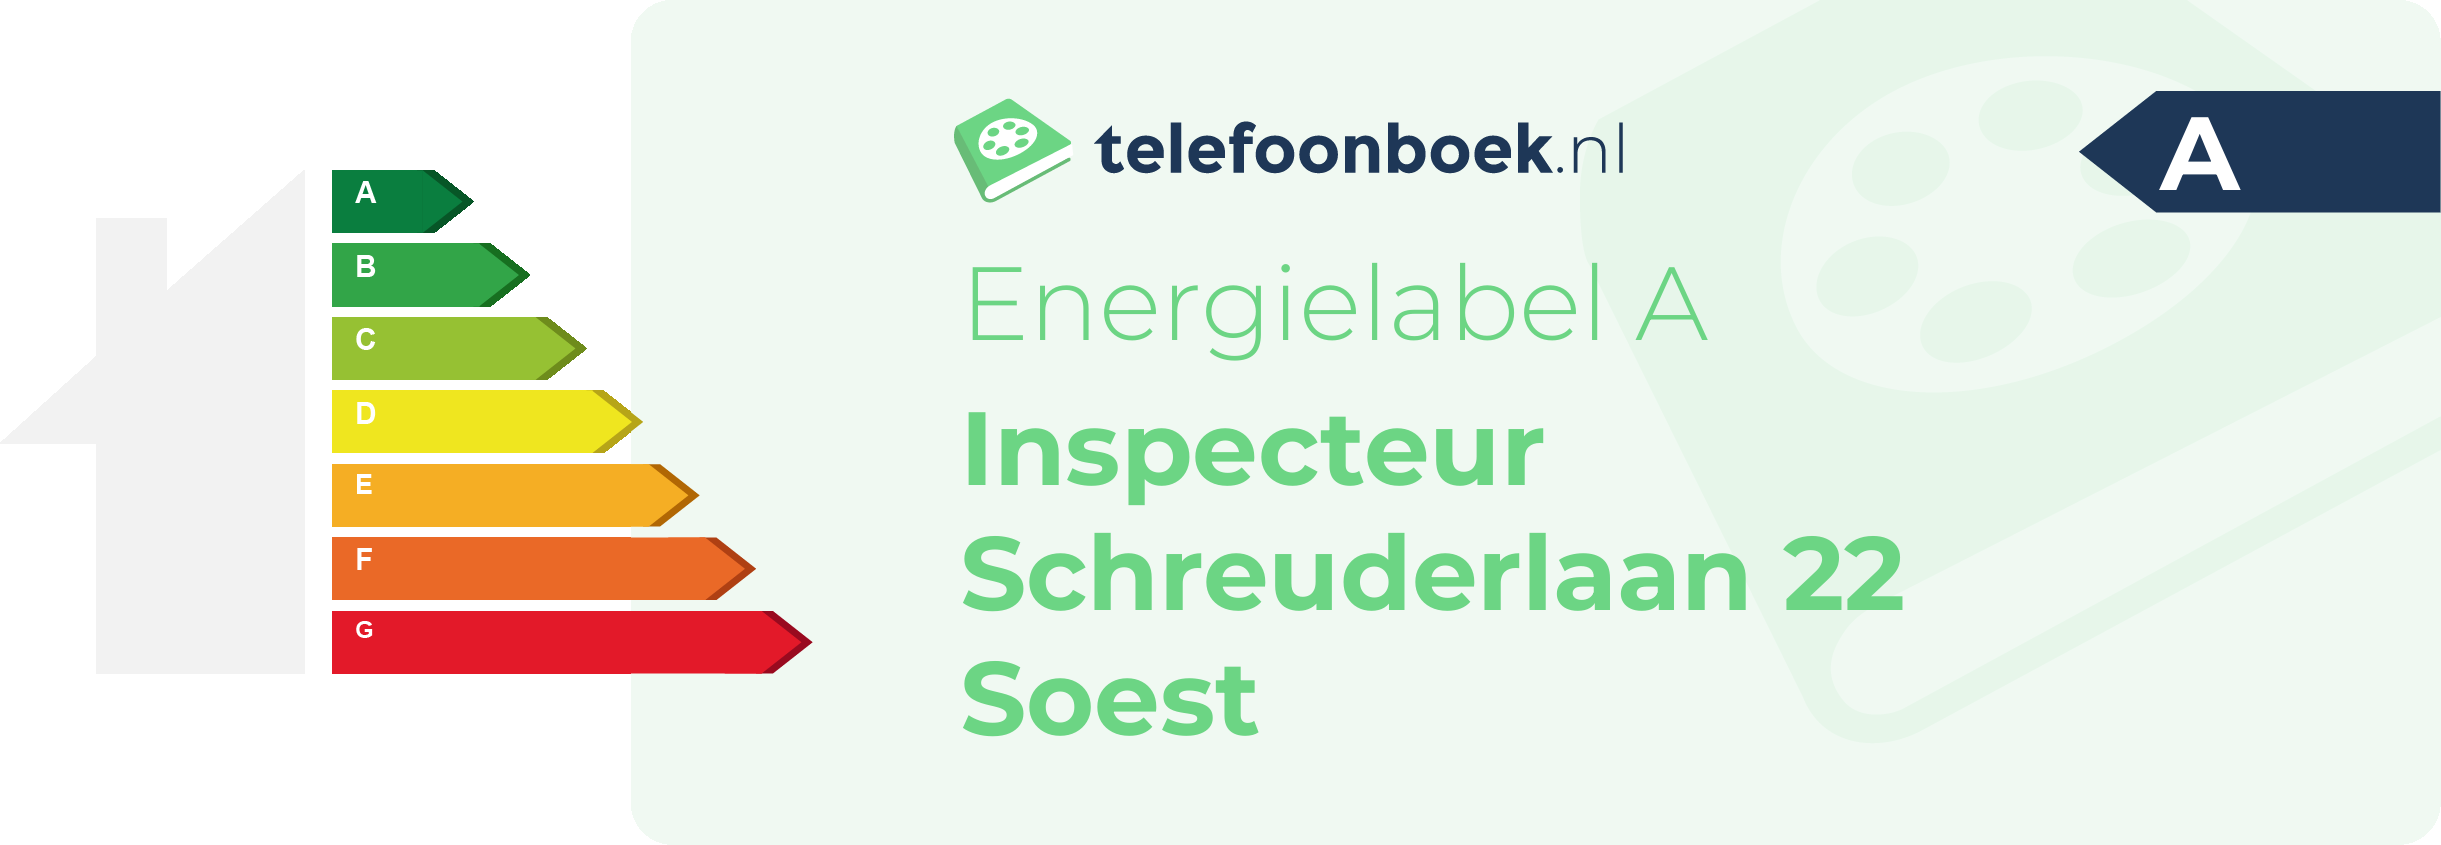 Energielabel Inspecteur Schreuderlaan 22 Soest